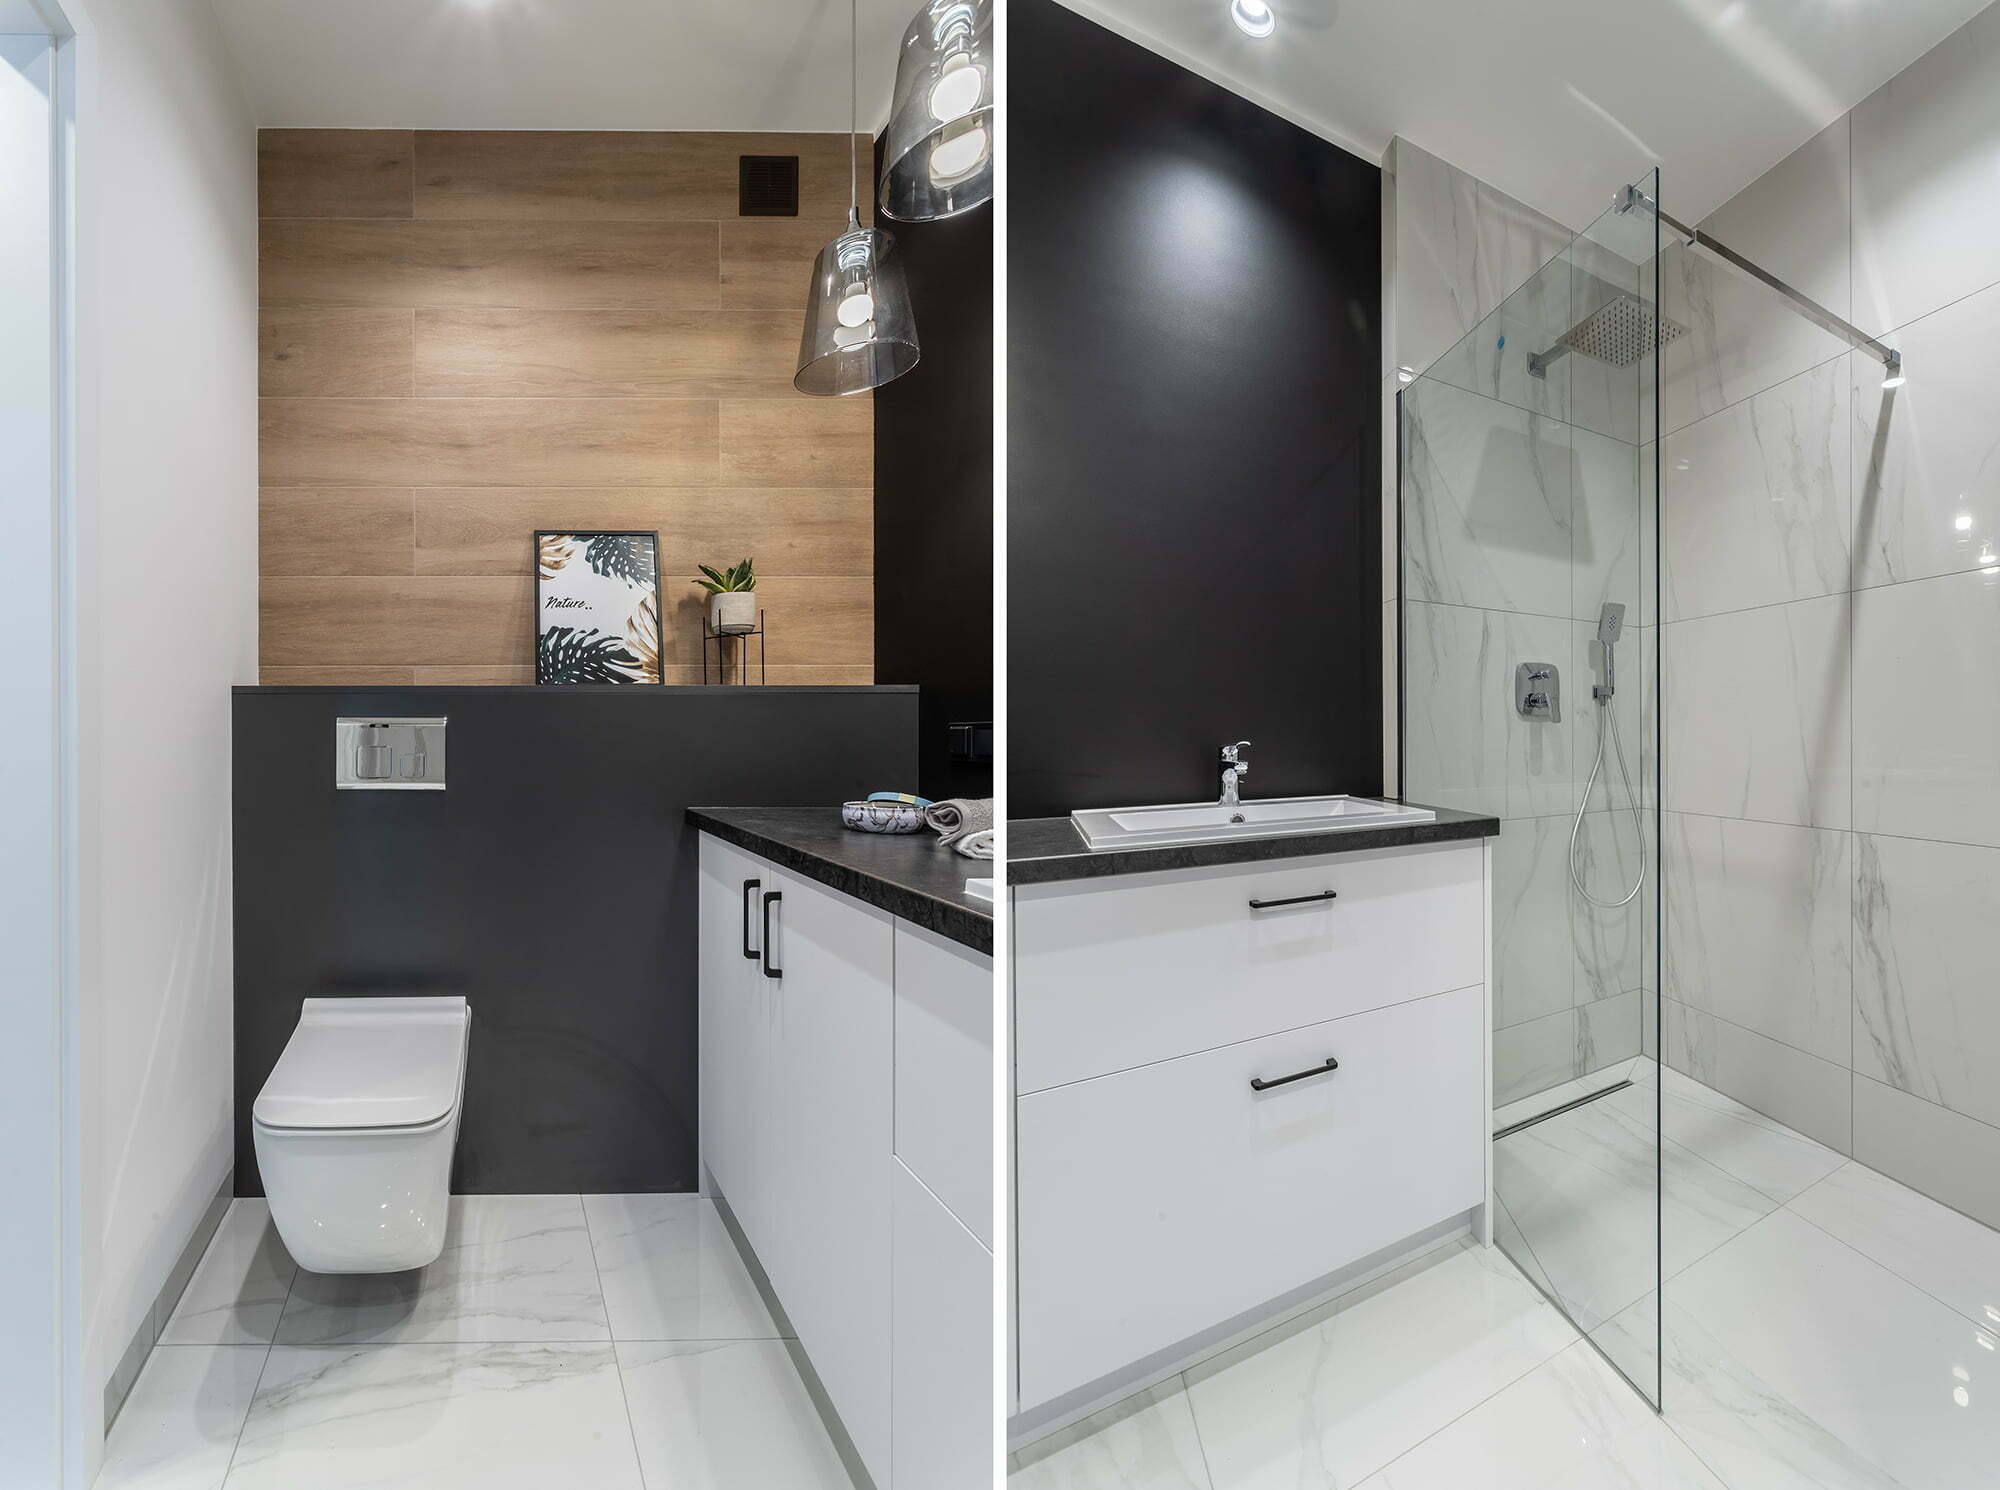 łazienka mała czarno biała z drewnem minimalistyczna aranżacja Beata Kołodziejczyk